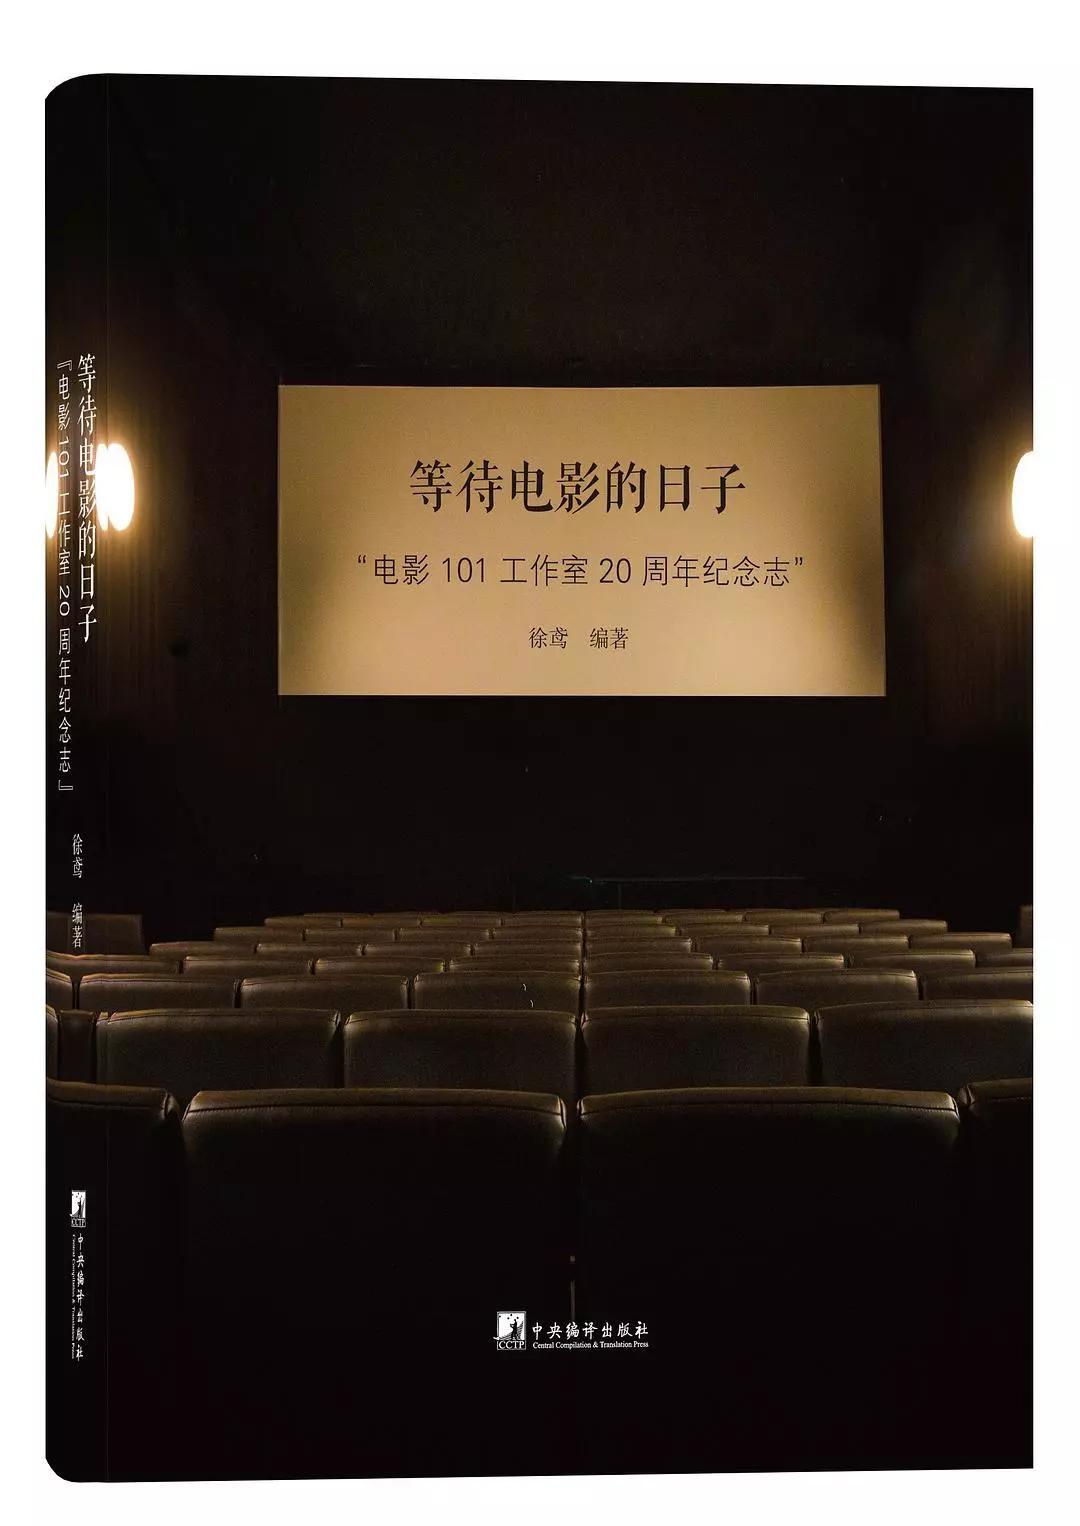 在中国，做一本电影书比你想的更难